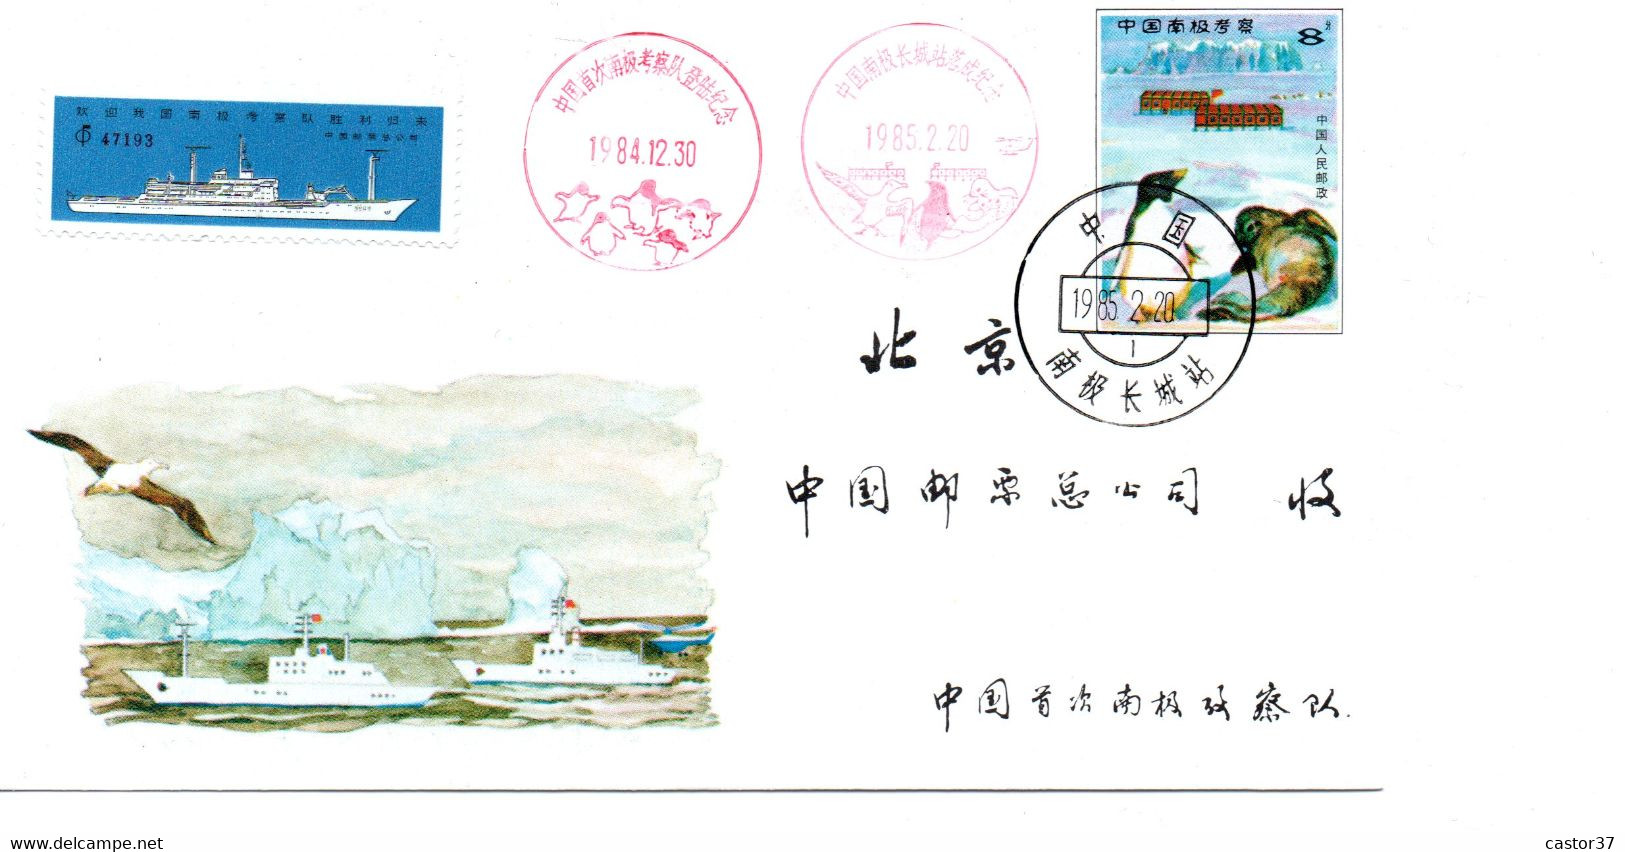 Chine RPC Livret Expédition En Antarctique JF.4 (1-1) - Autres Modes De Transport